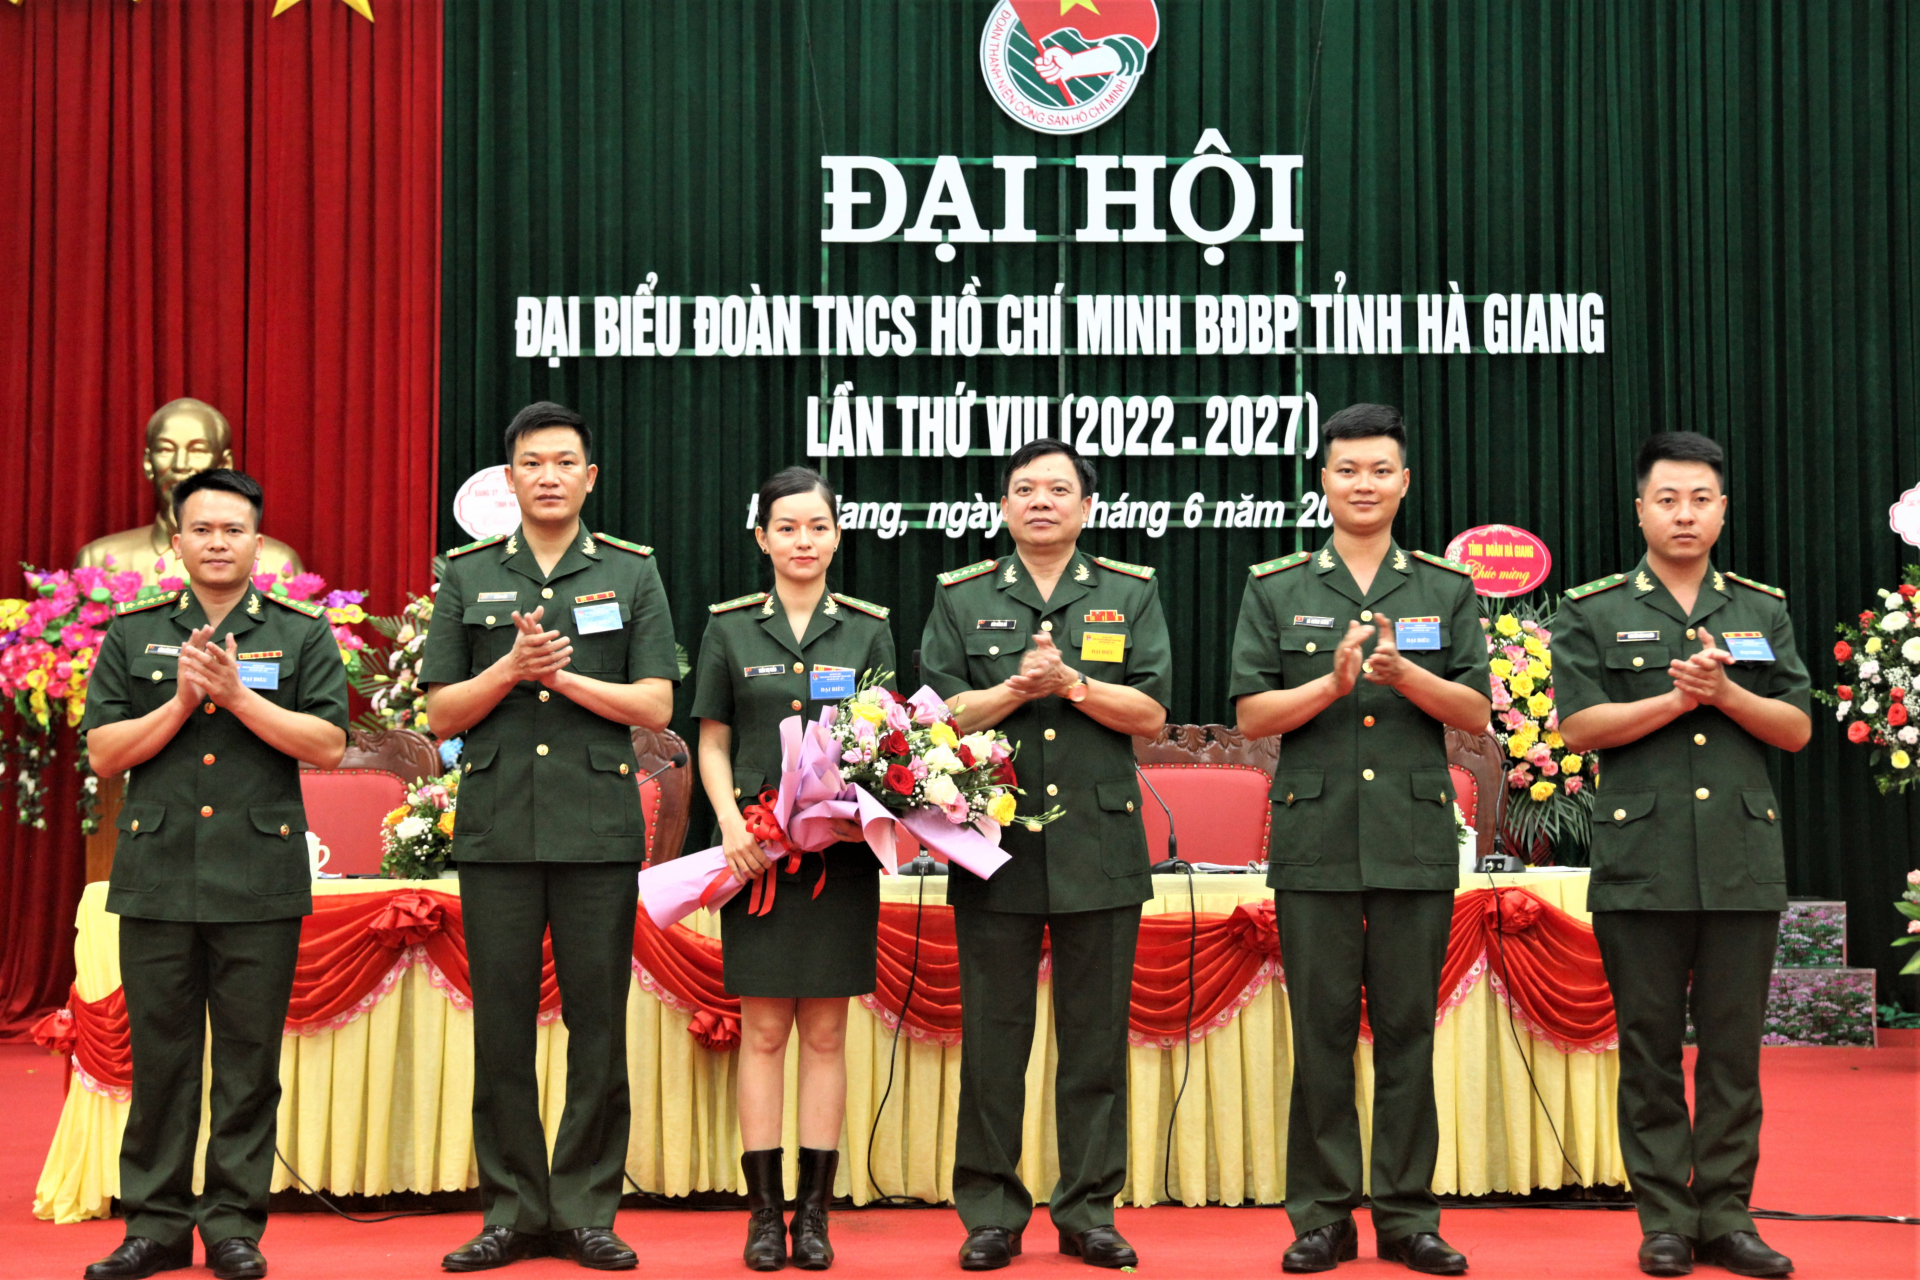 Đoàn đại biểu tham dự Đại hội đại biểu Đoàn TNCS Hồ Chí Minh tỉnh Hà Giang lần thứ XVII, nhiệm kỳ 2022 – 2027 ra mắt Đại hội.